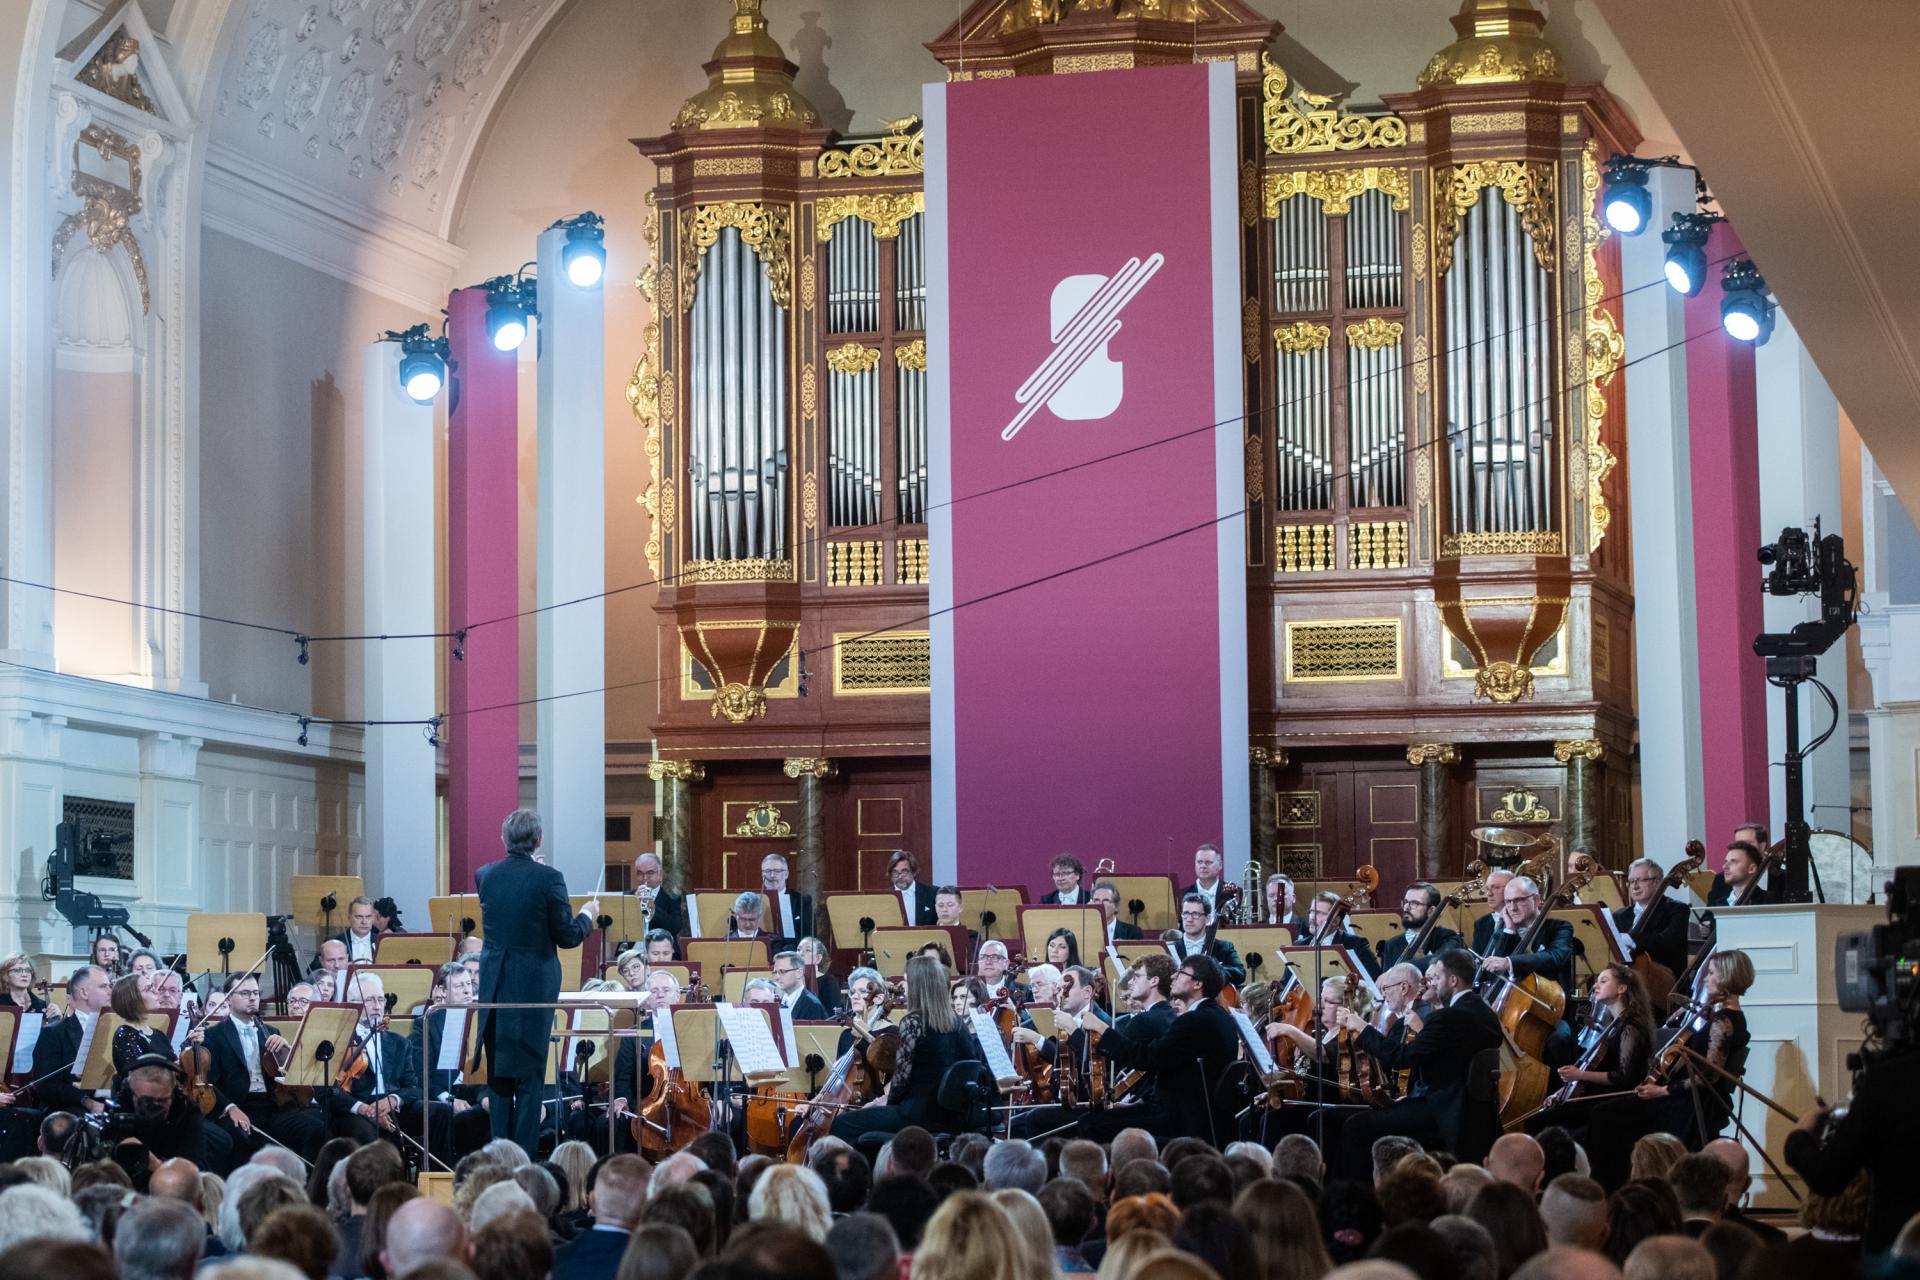 Muzyka skrzypcowa przez dwa tygodnie króluje w stolicy Wielkopolski - zobacz więcej